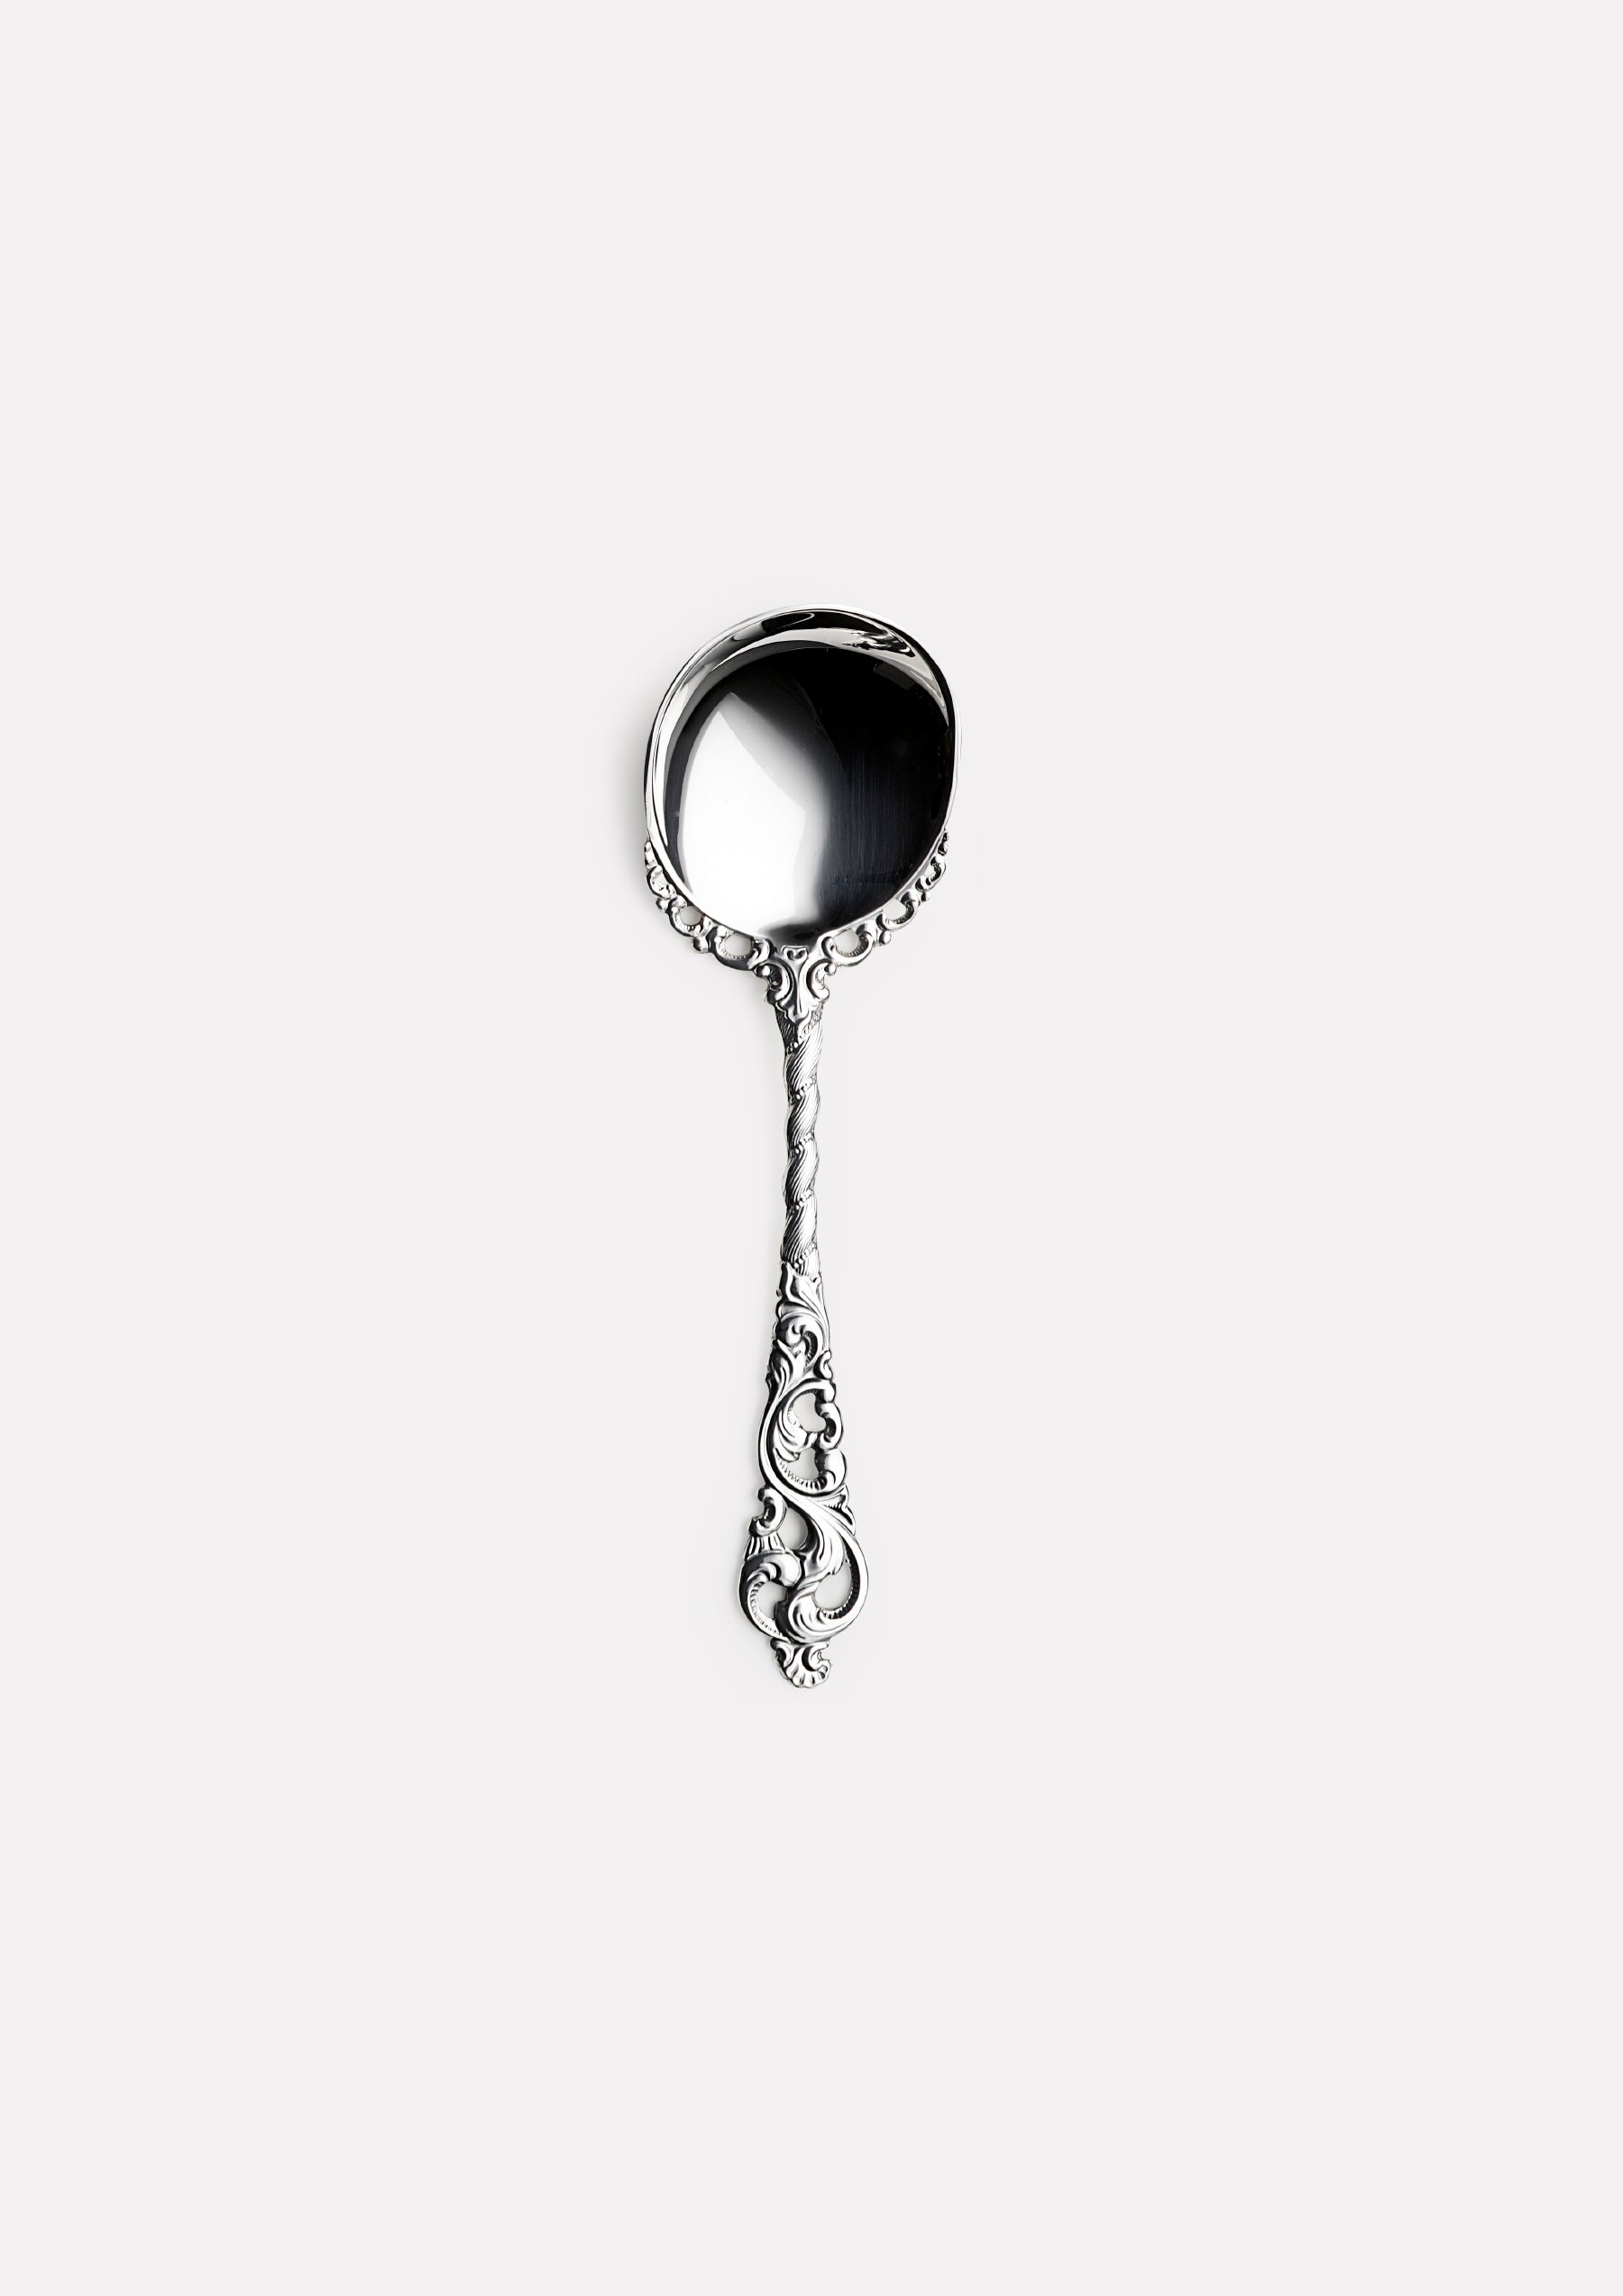 Double rococo no. 128 jam spoon 13 cm